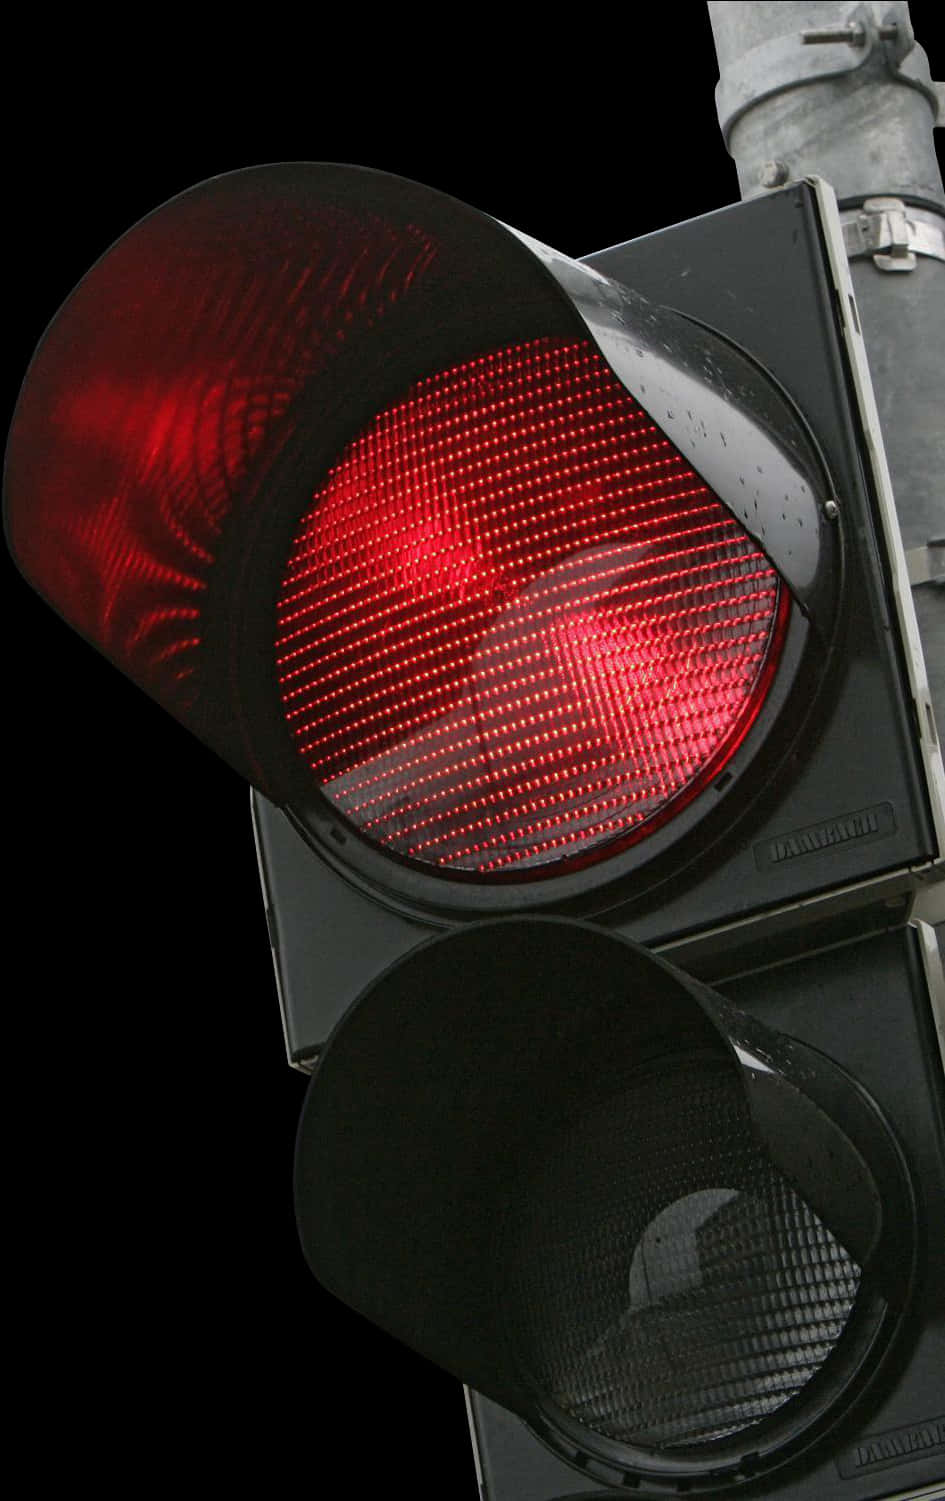 Illuminated Red Traffic Lightat Night.jpg PNG